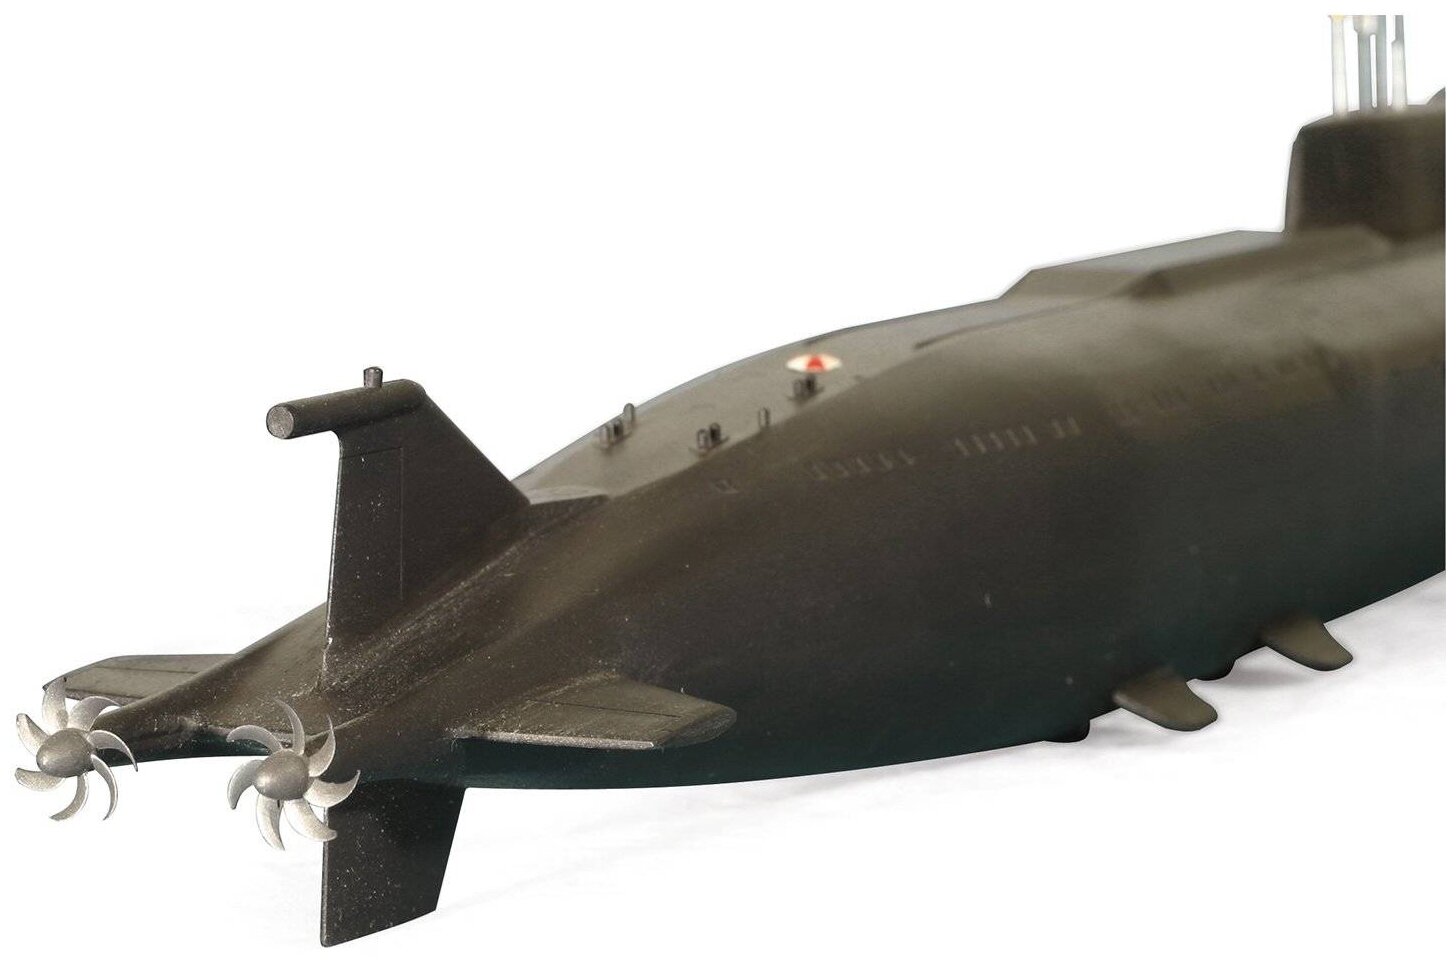 ZVEZDA Сборная модель Российский атомный подводный ракетный крейсер К-141 "Курск", подарочный набор - фото №6